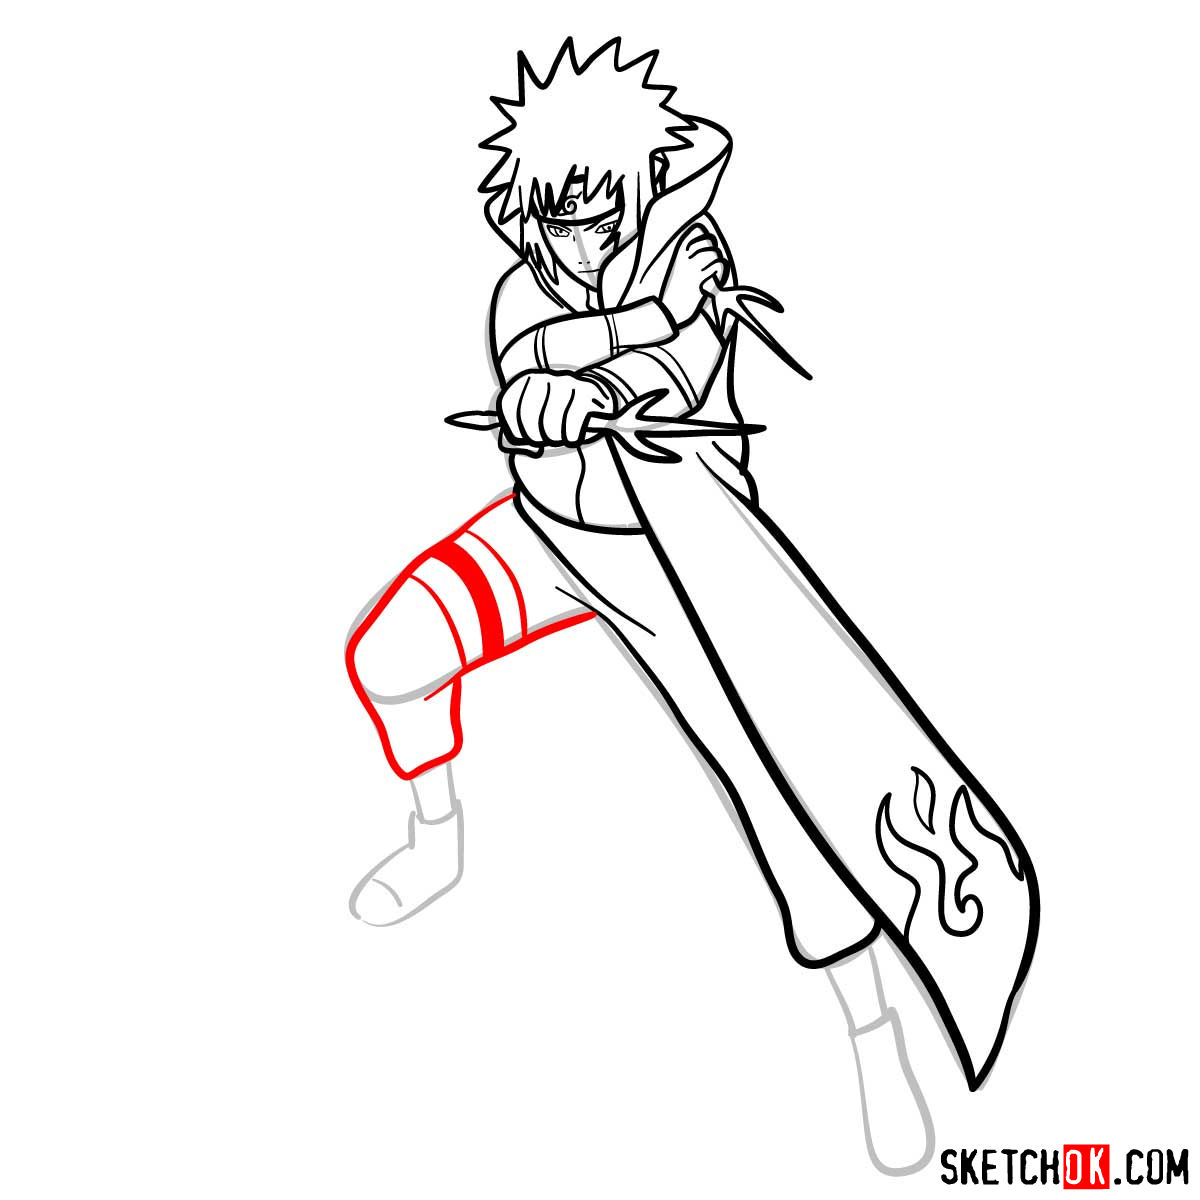 How to draw Minato Namikaze from Naruto anime - step 13